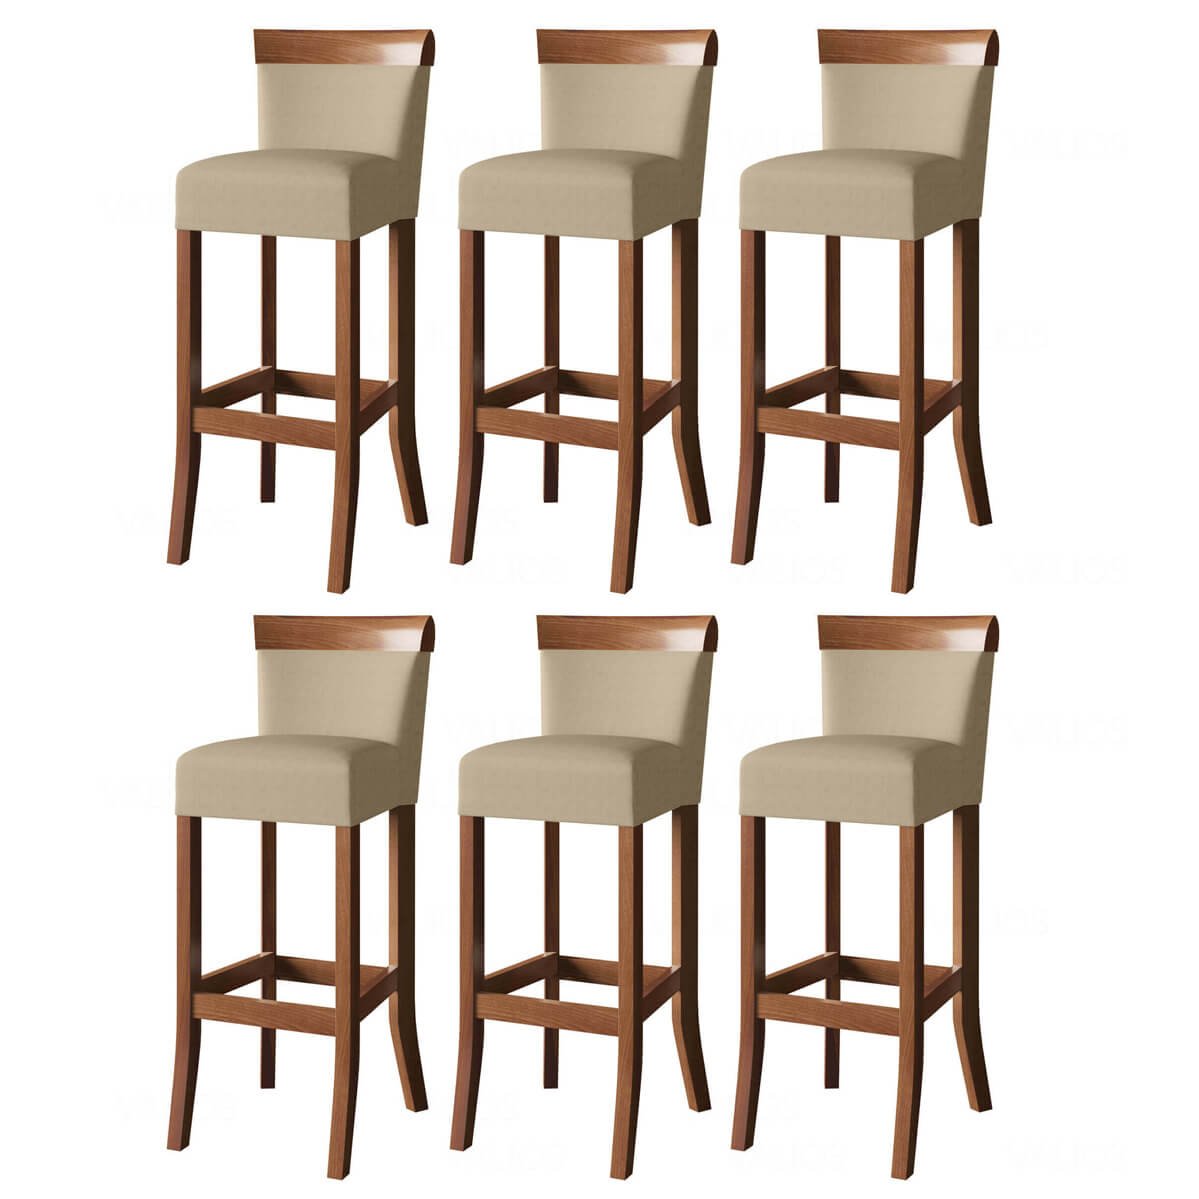 Jogo com 6 cadeira para bancada banco alto de madeira bar cozinha americana encosto estofado Valios - 1